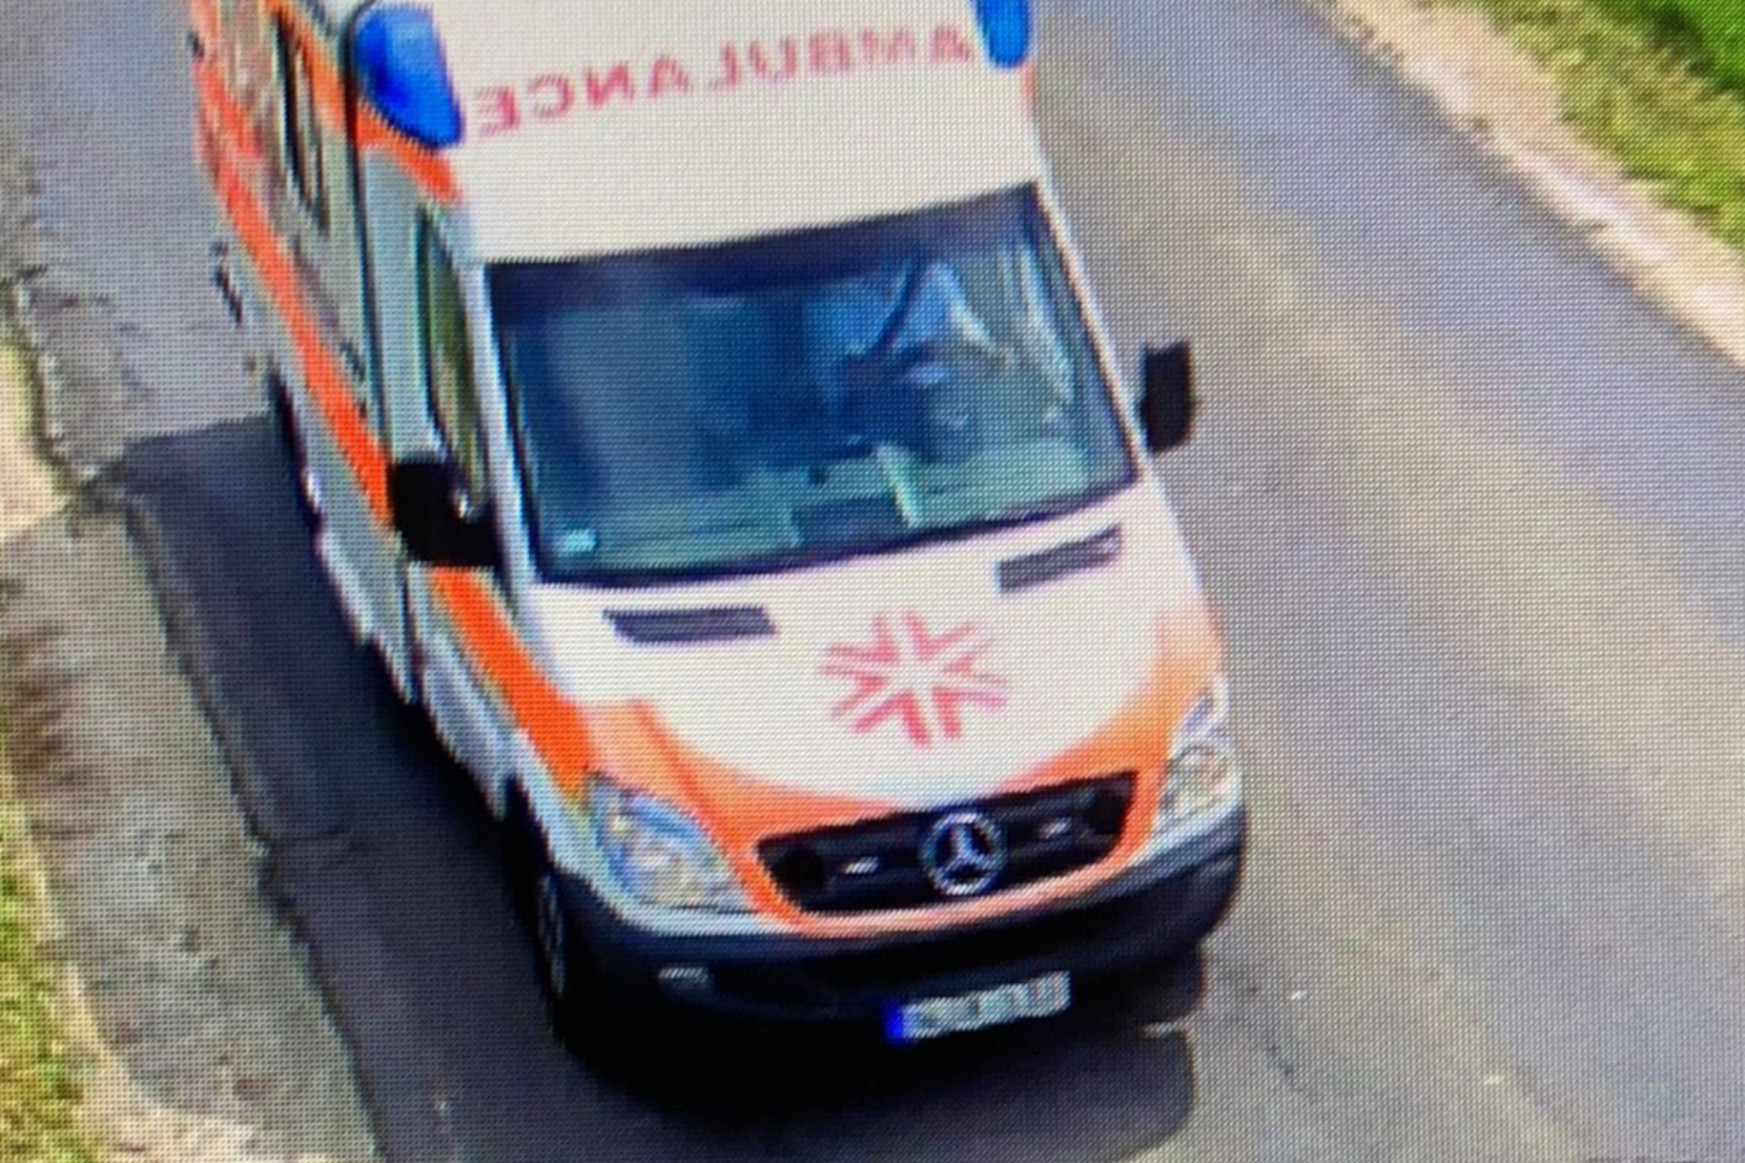 Használt mentőautóban csempésztek át embereket Szerbiából, de lebuktak